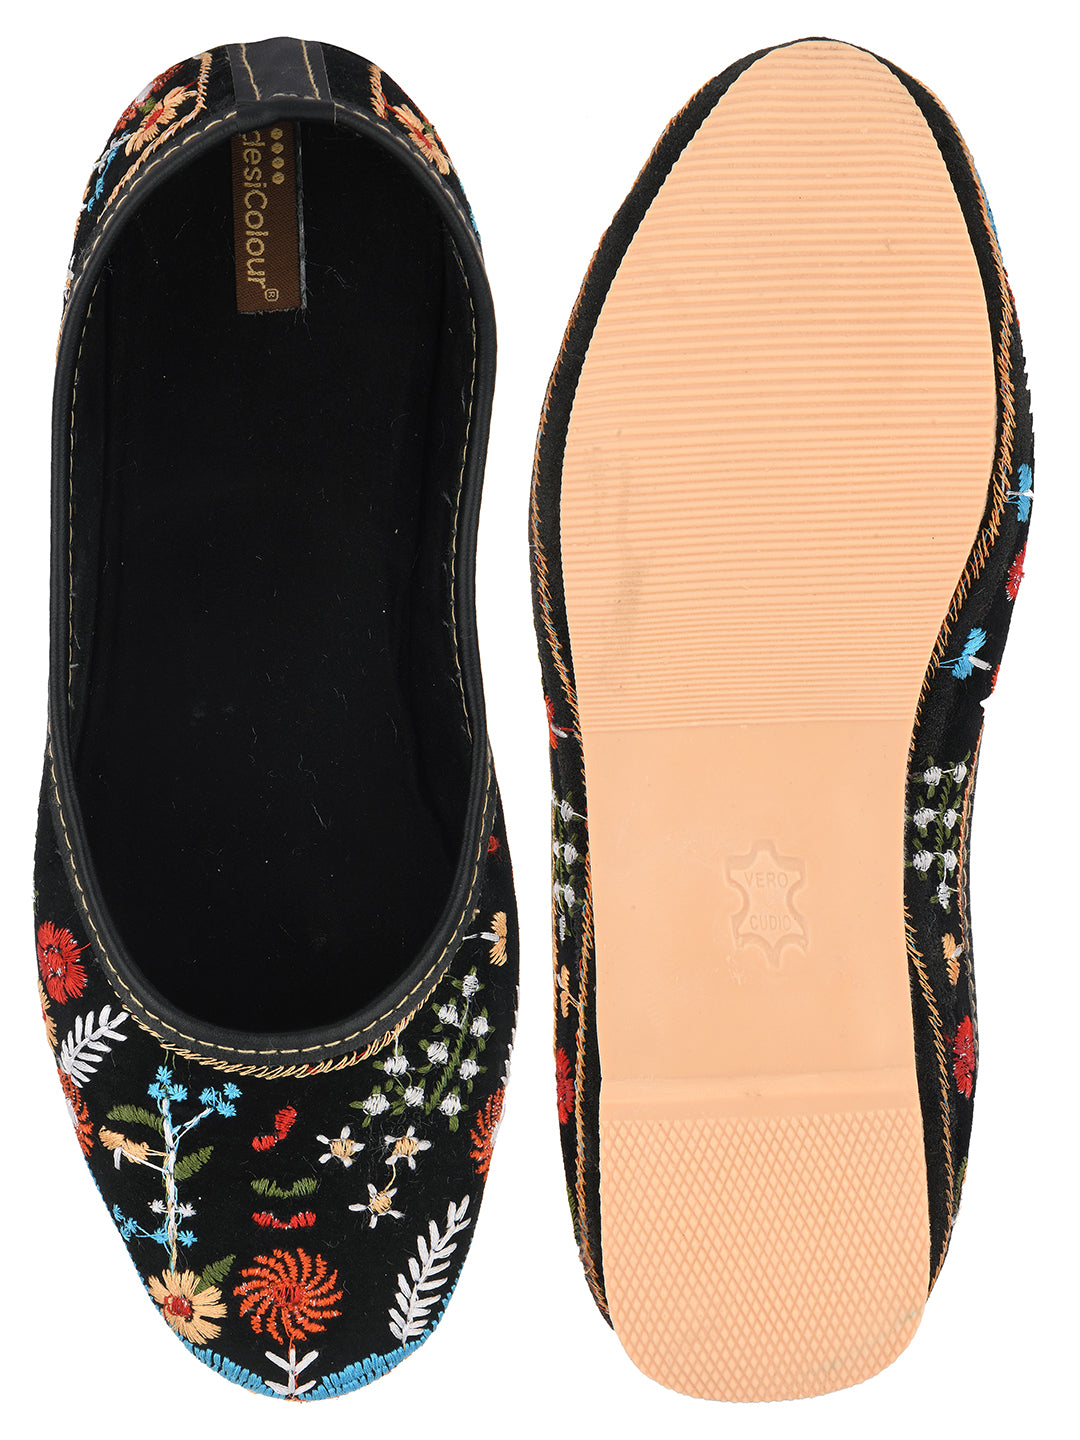 Women's Black Boutique  Indian Ethnic Comfort Footwear - Desi Colour